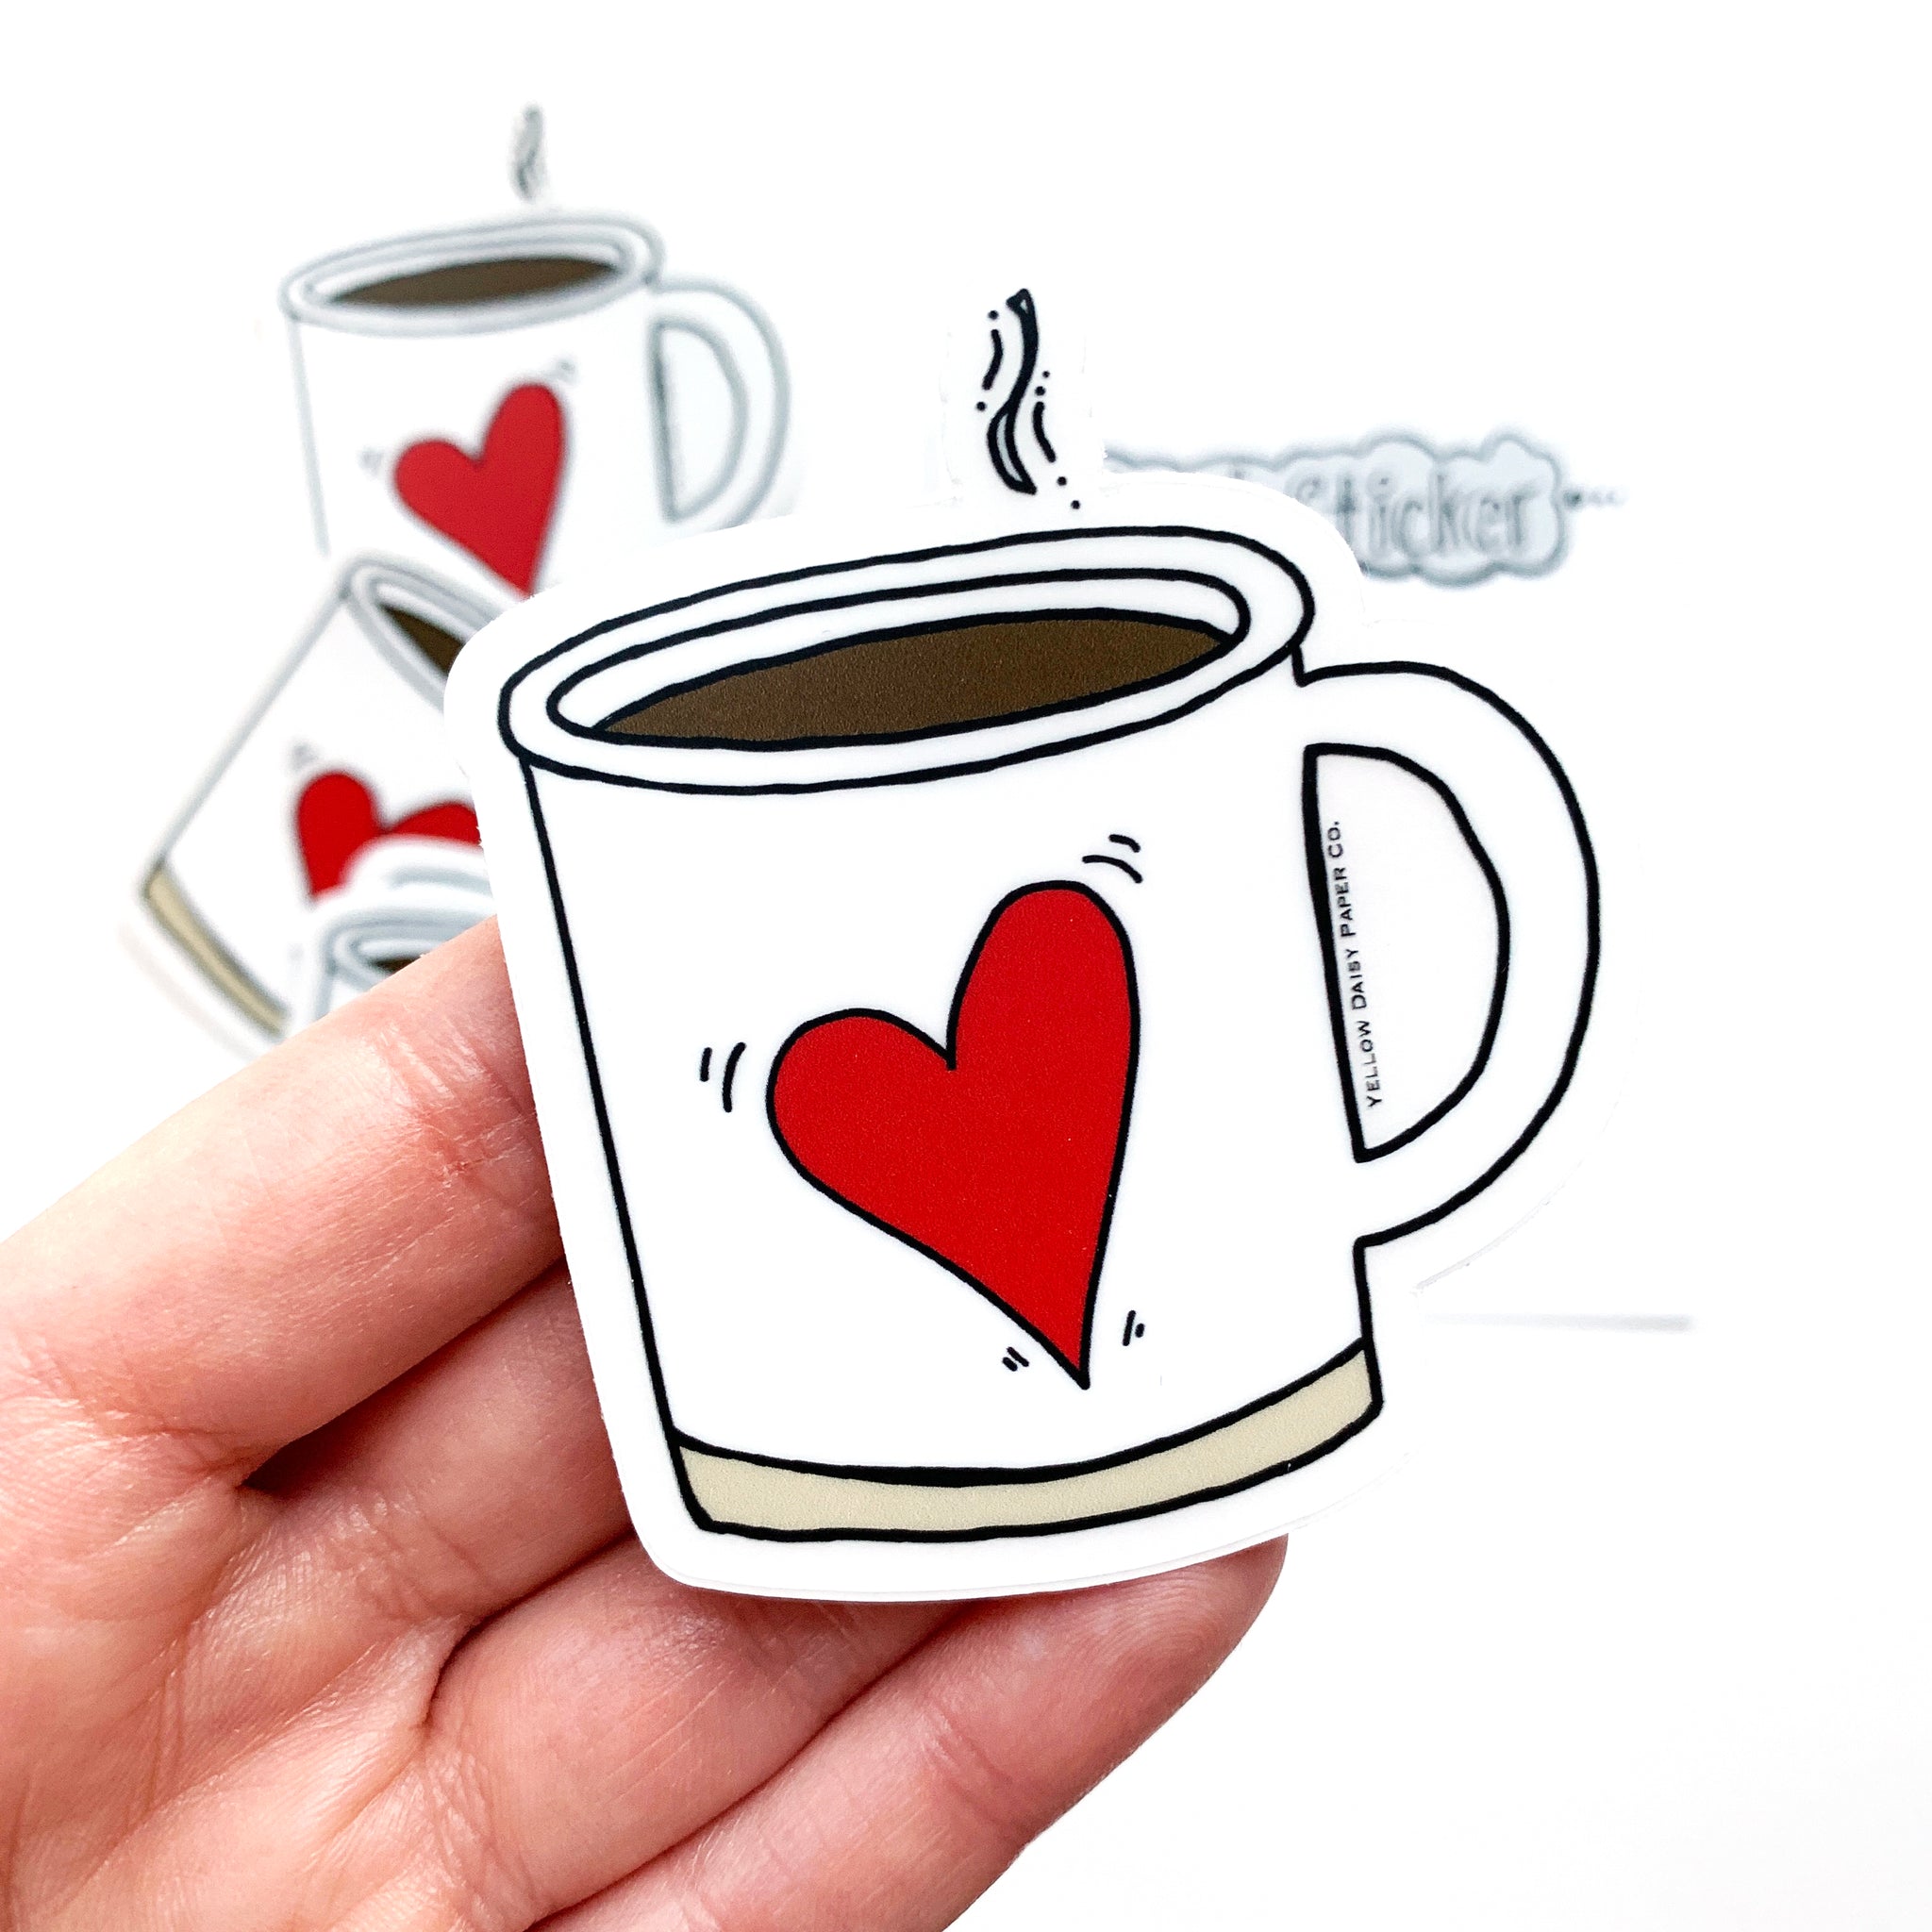 Mug Set - Buy Triangle Coffee Mug Set of 6 Online in India | Nestasia